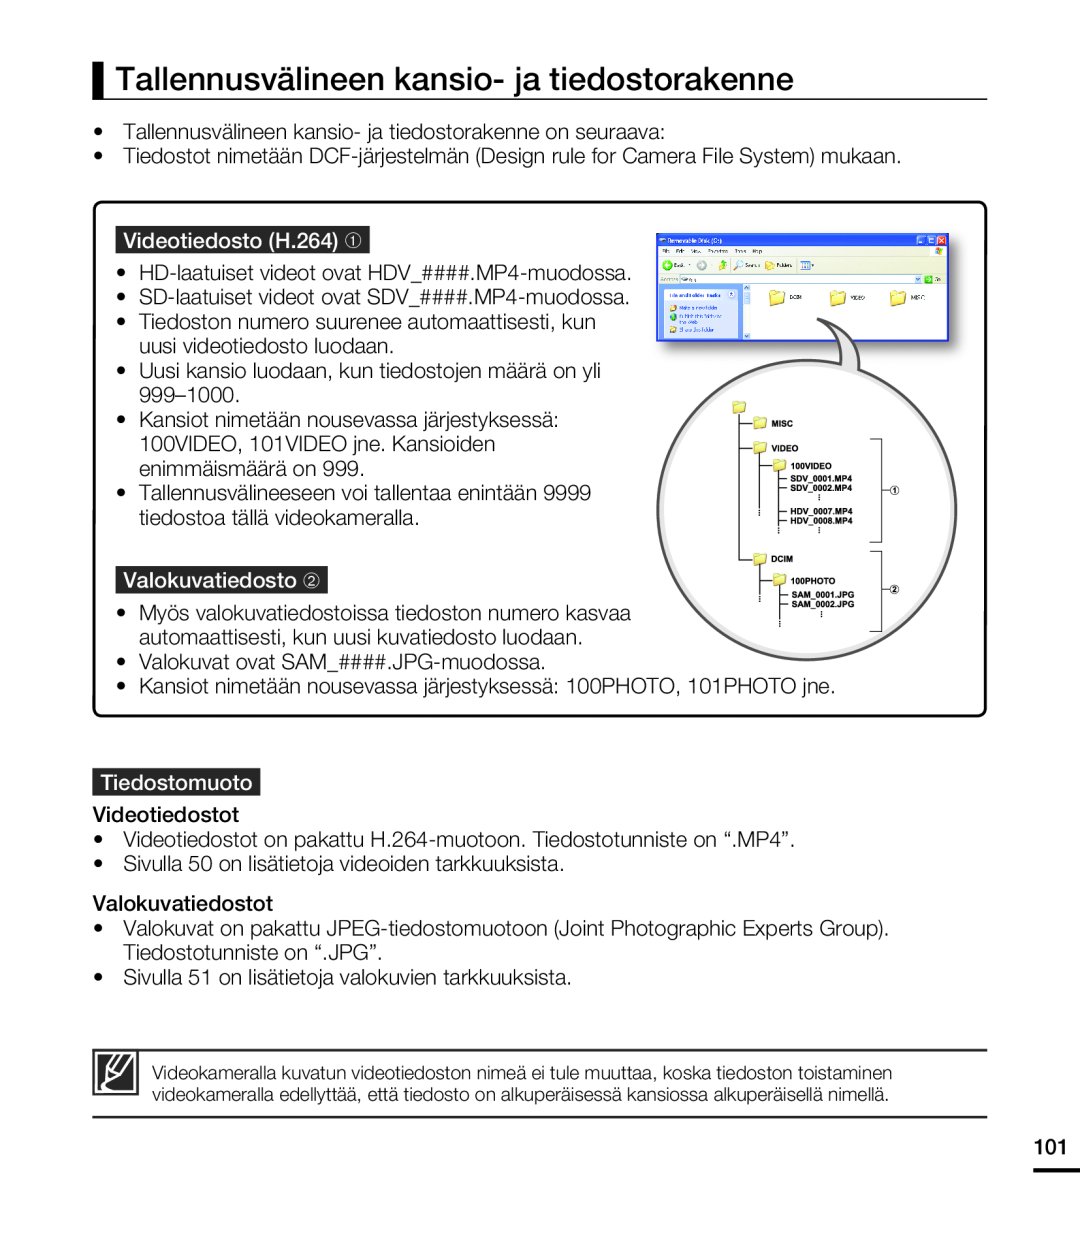 Samsung HMX-T10BP/EDC manual Tallennusvälineen kansio- ja tiedostorakenne, Videotiedosto H.264 ➀, Valokuvatiedosto ➁ 